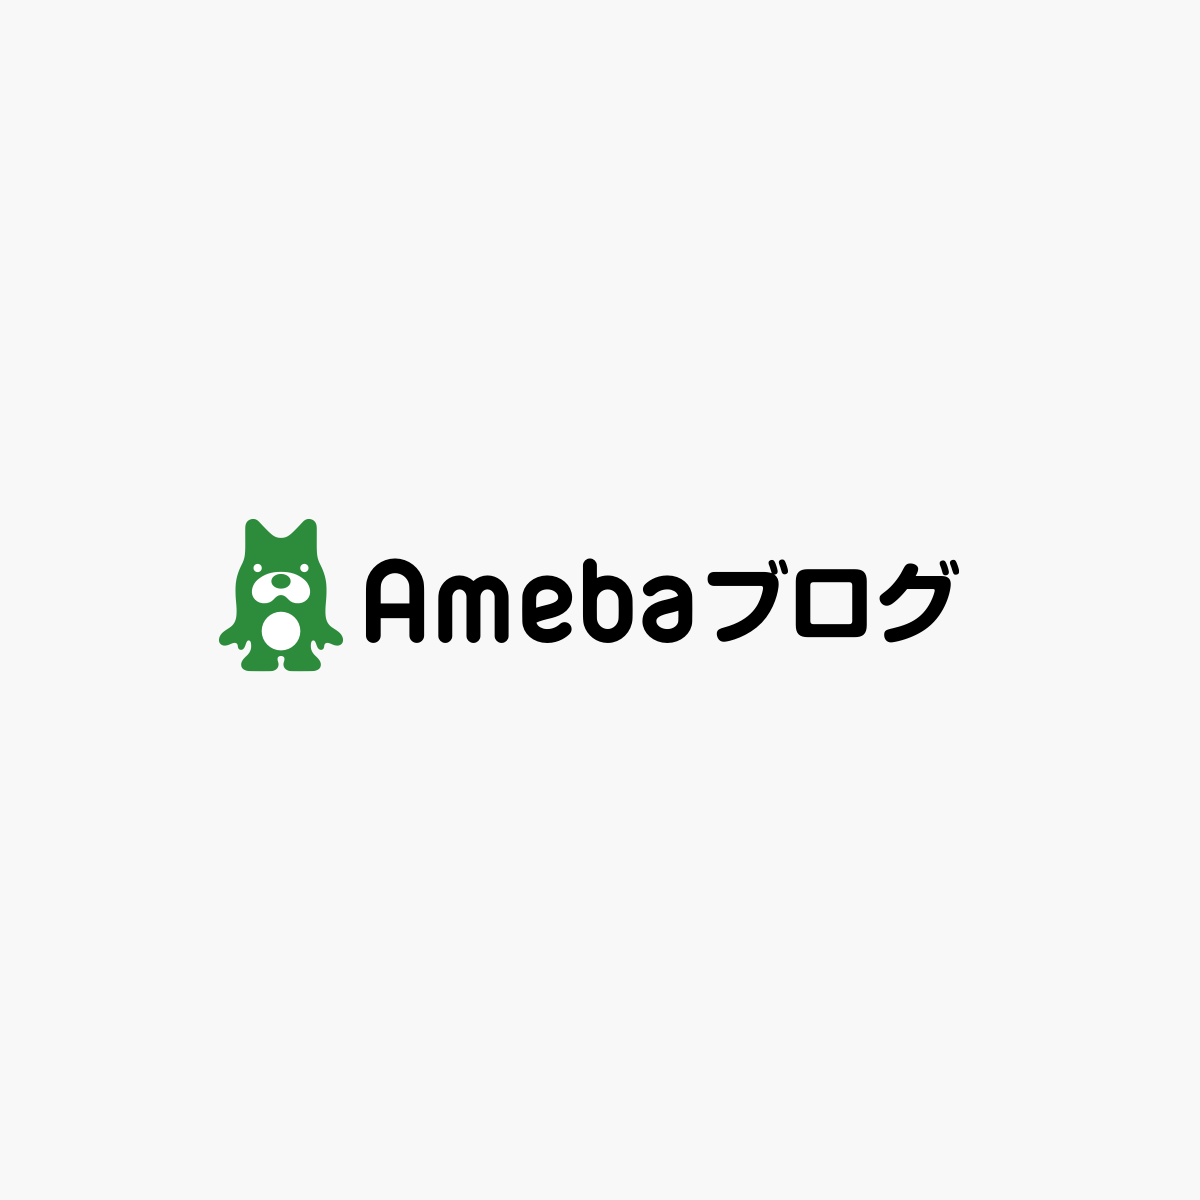 ameblo jp